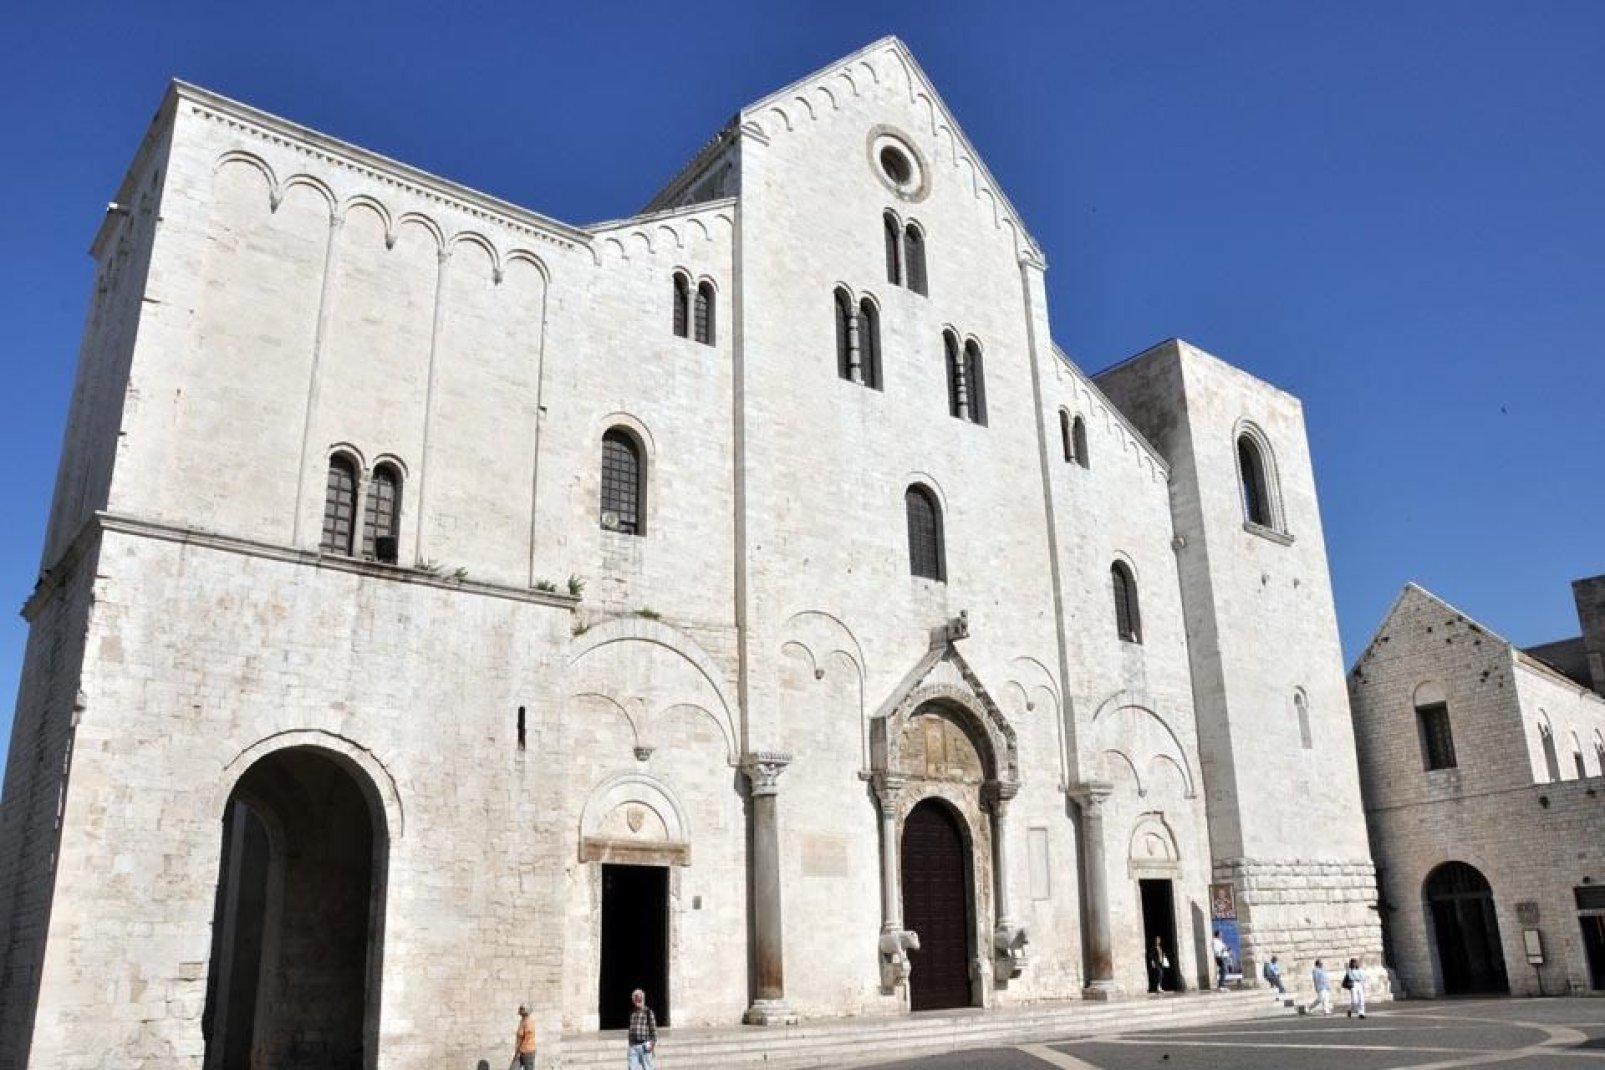 La Basilique, au cœur de la vieille ville, a été construite en style roman entre 1089 et 1197 et abrite les reliques de Saint-Nicolas